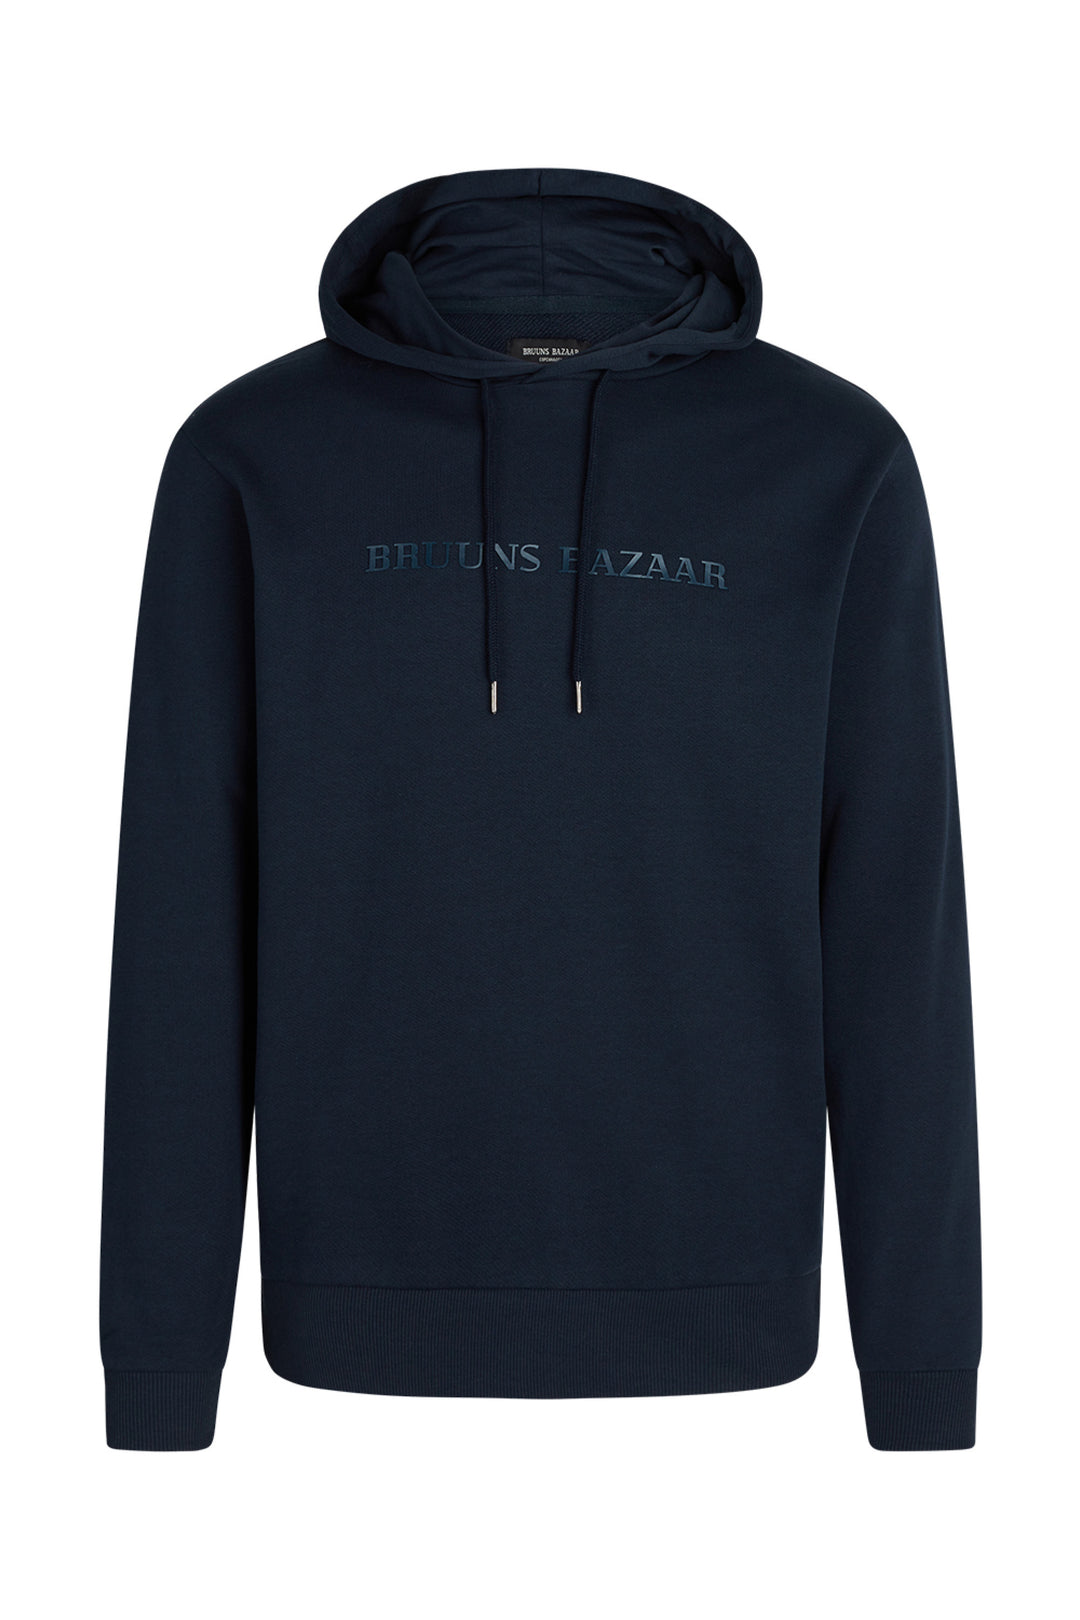 Bruuns Bazaar Men BertilBB hoodie Sweatshirt Navy